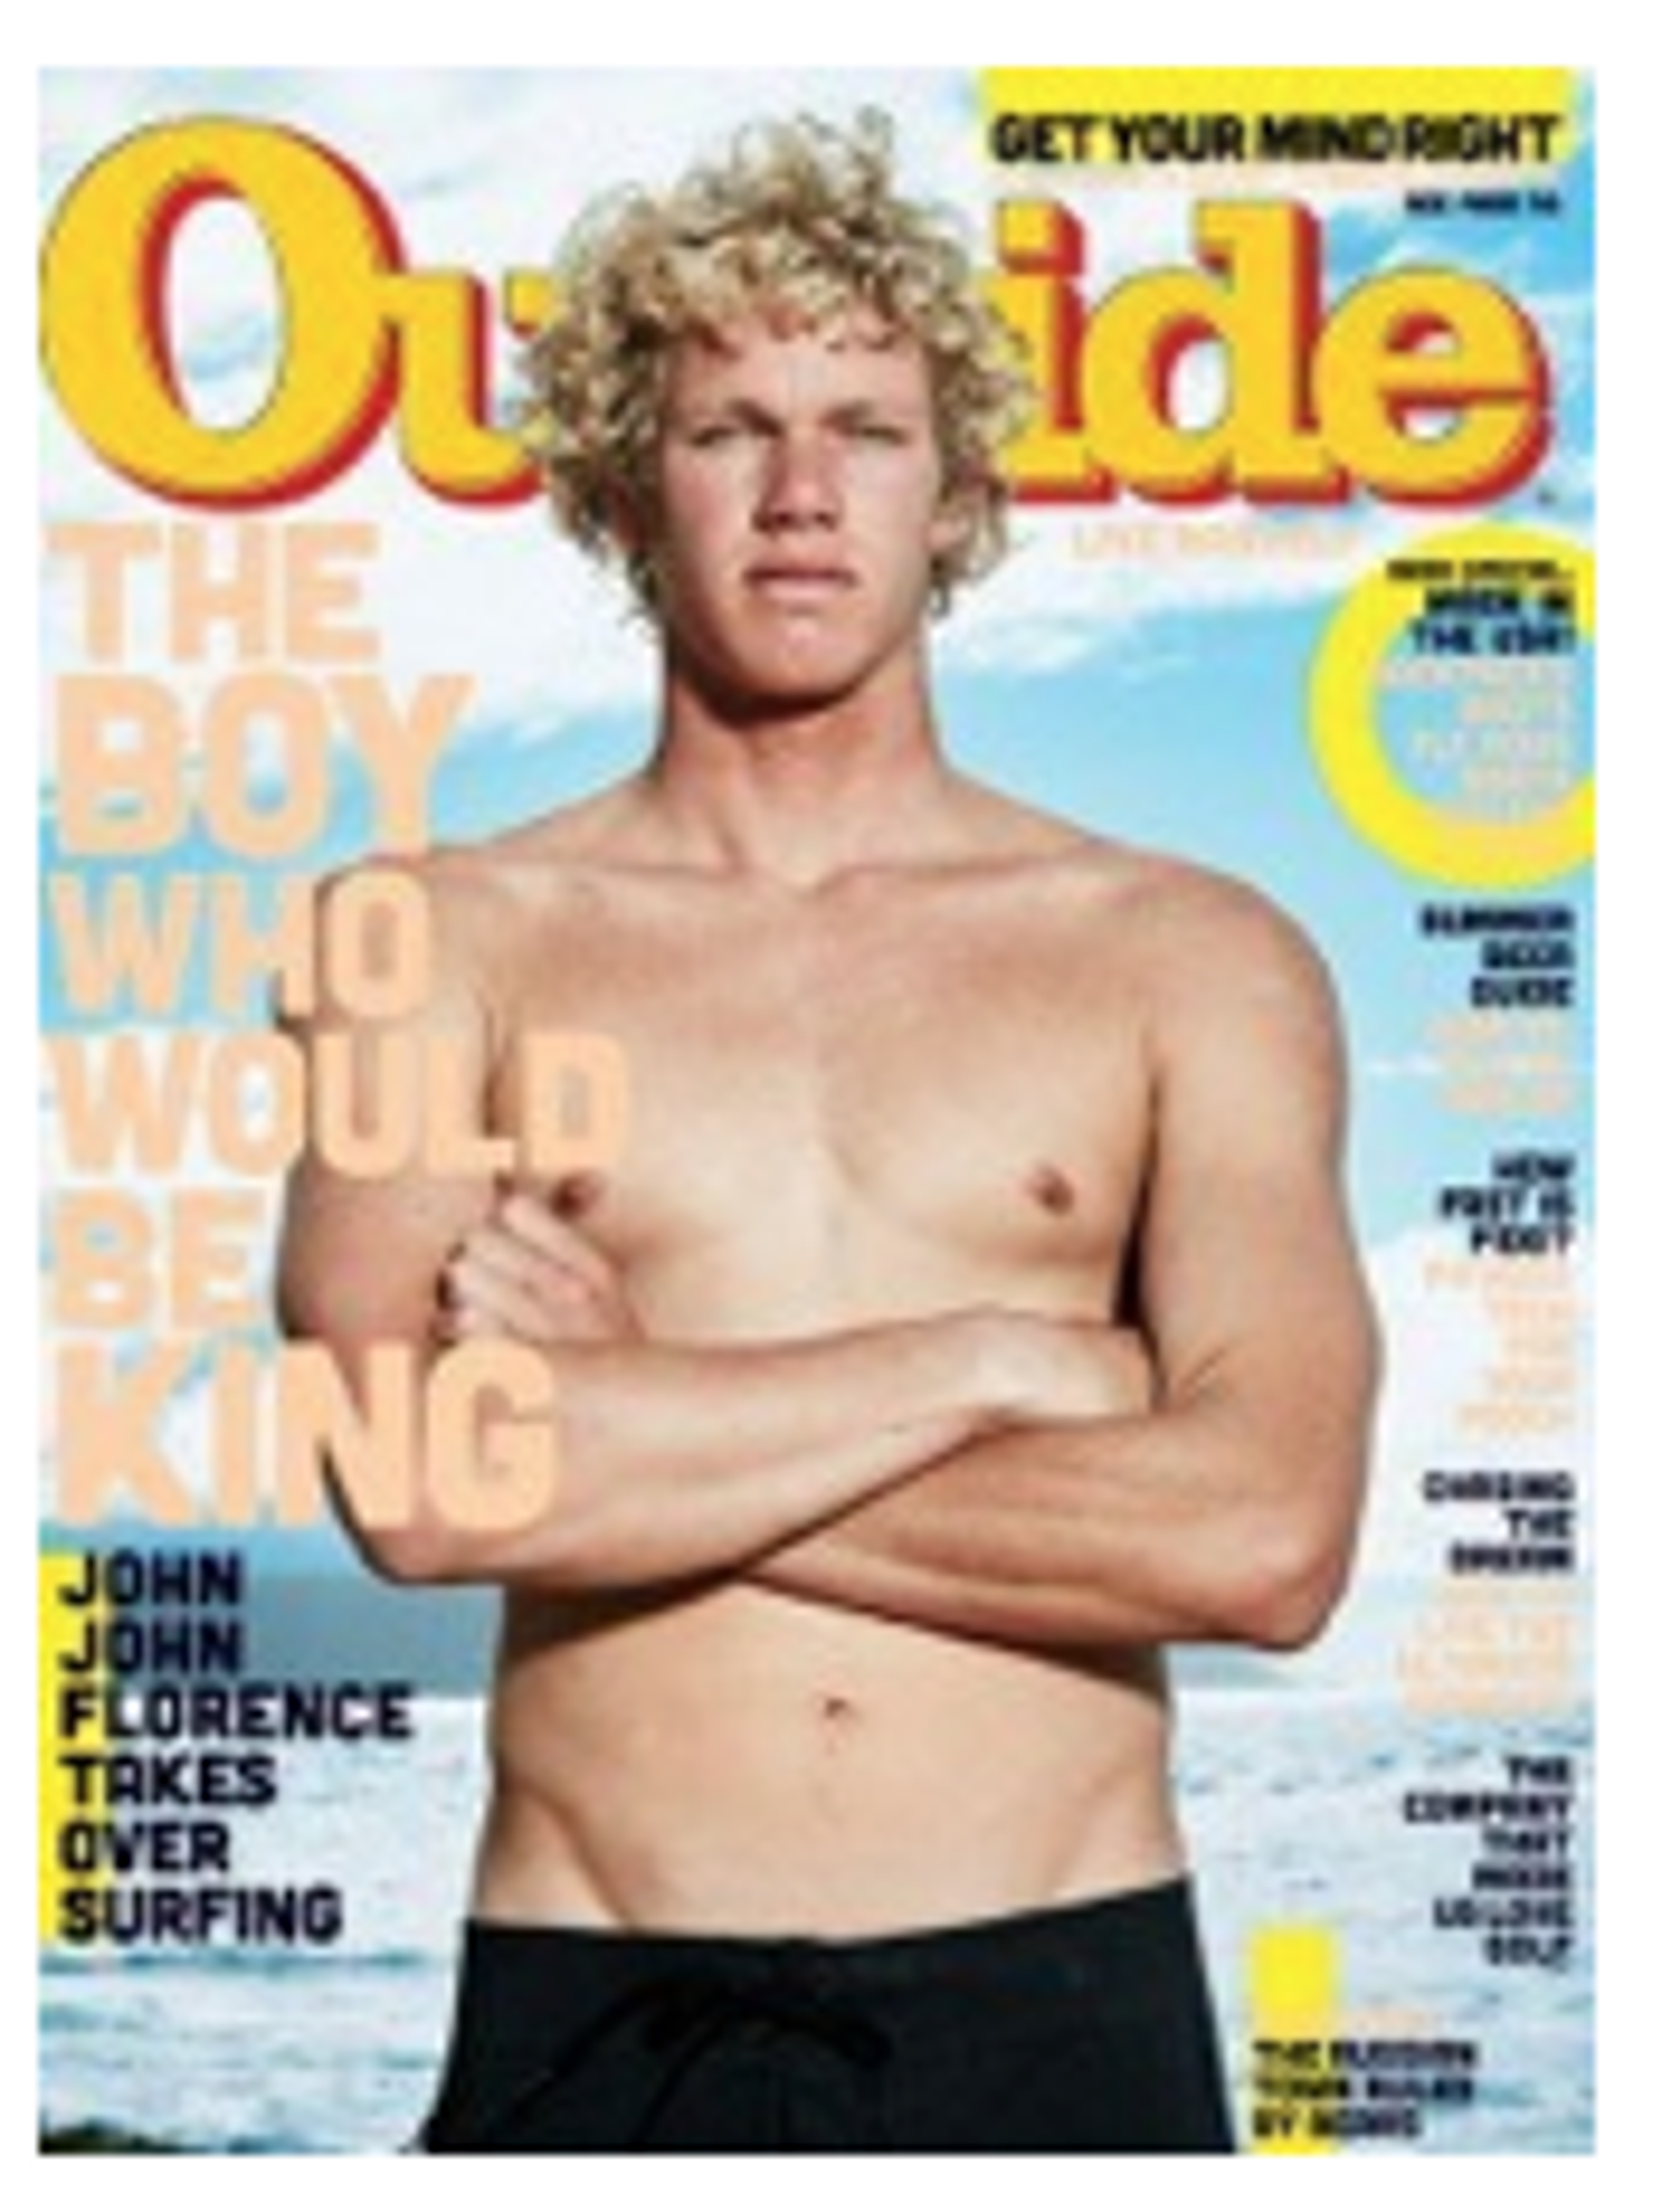 Nieuw avontuurlijk lifestylemagazine: Outside